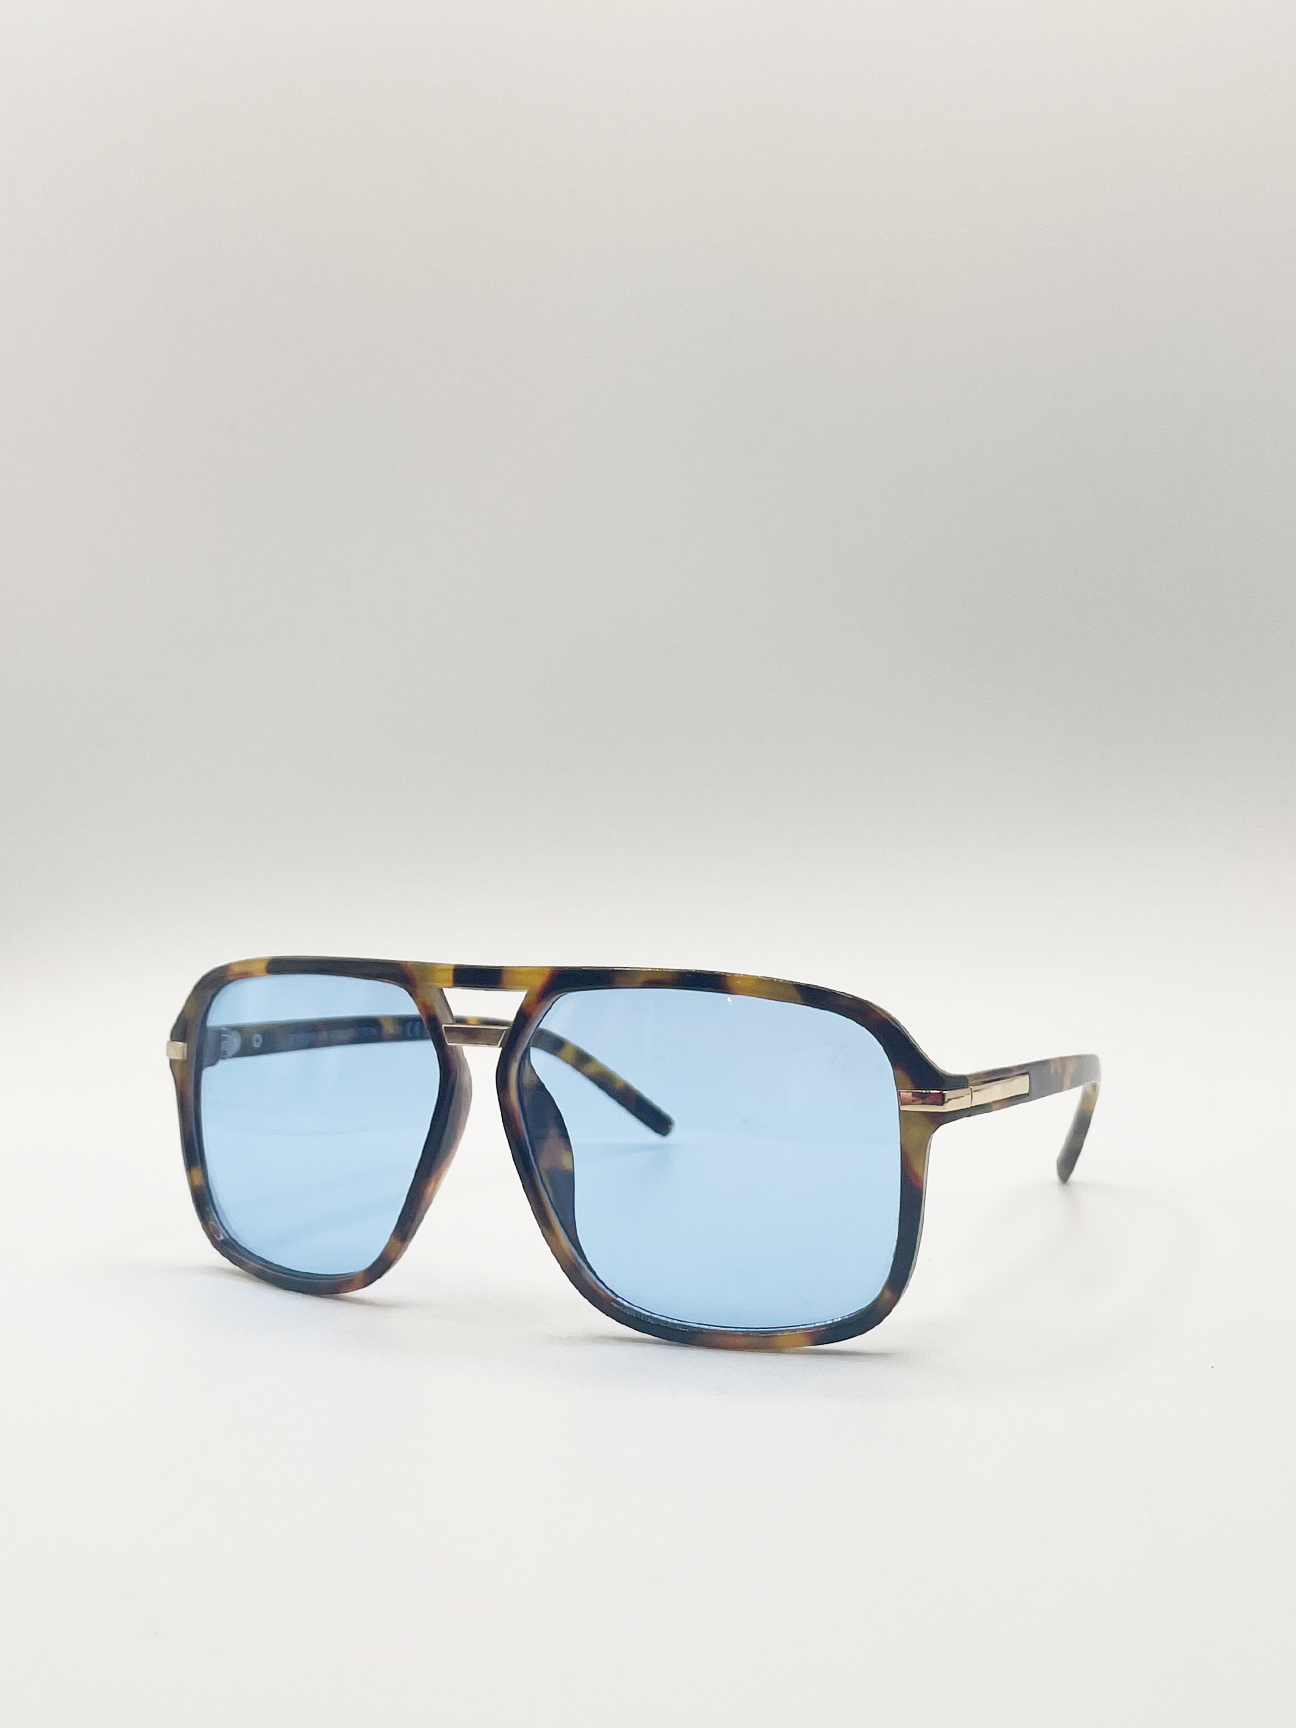 Tortoiseshell Navigator Sunglasses with Blue Lenses